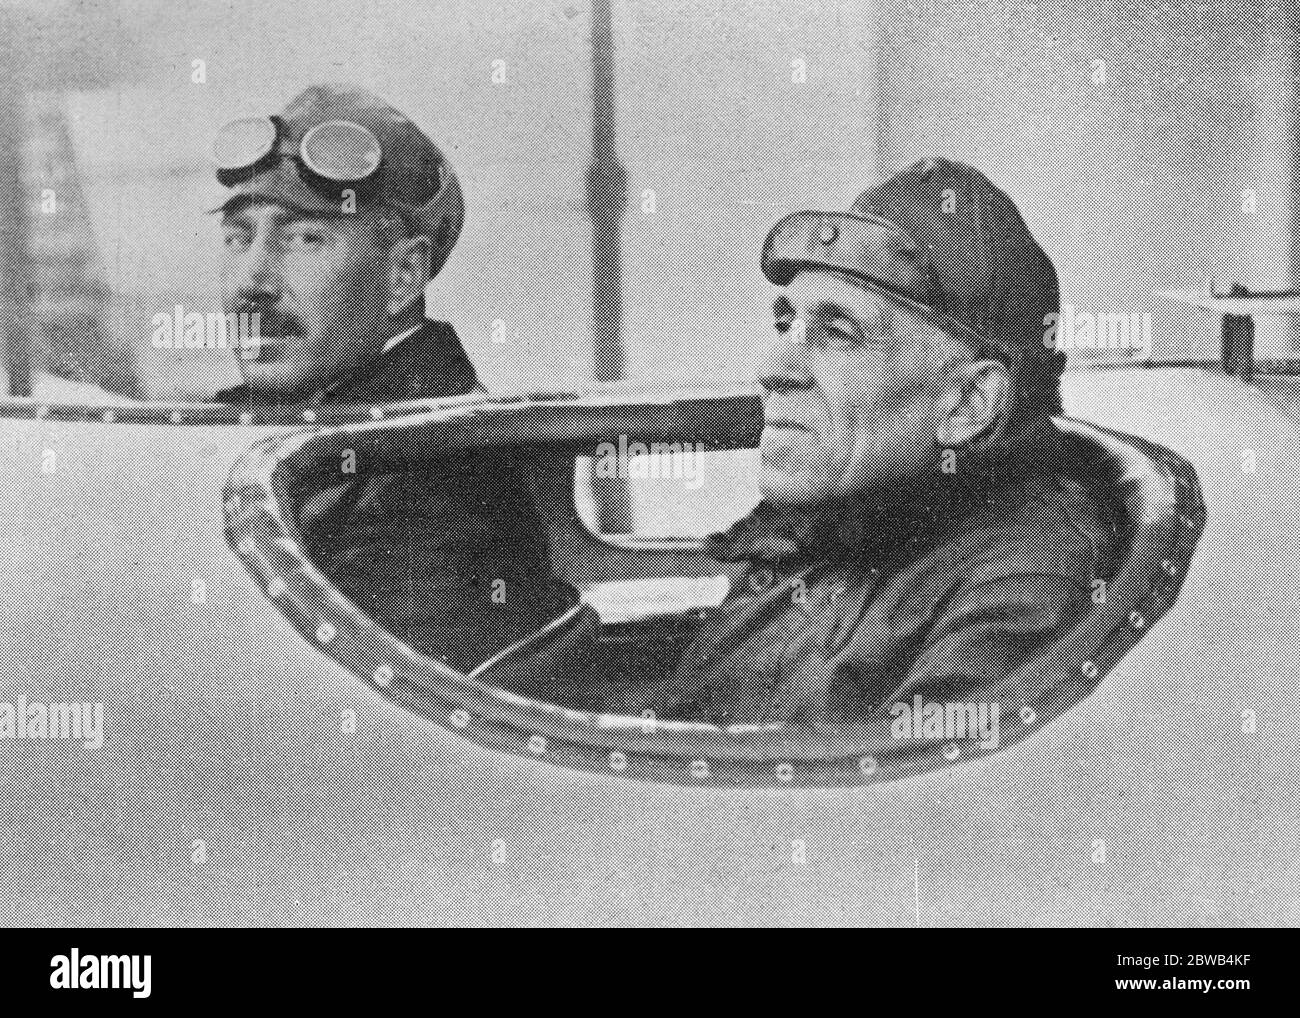 Flieger, die den Atlantischen Kommandanten Sacadura Cabral (links) und Kapitän Gago Couthino die portugiesischen Flieger geflogen haben, die sicher in Pernambuco (Brasilien) gelandet sind und somit ihren Flug von Europa nach Südamerika am 7. Juni 1922 abgeschlossen haben Stockfoto